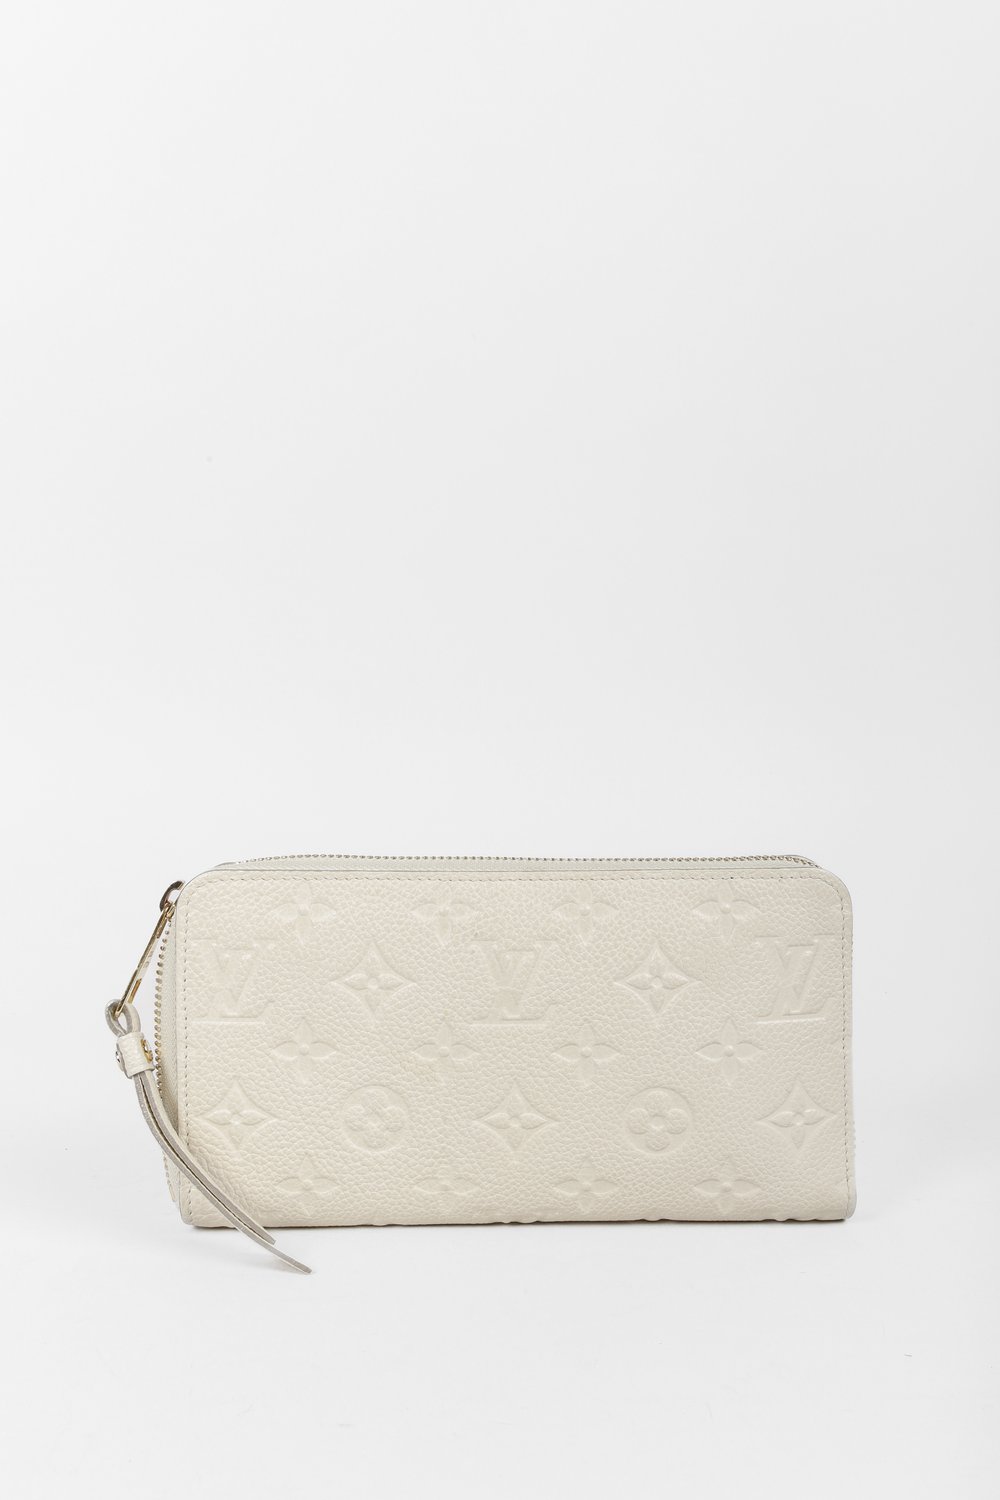 Louis Vuitton White Monogram Empreinte Leather Zippy Wallet